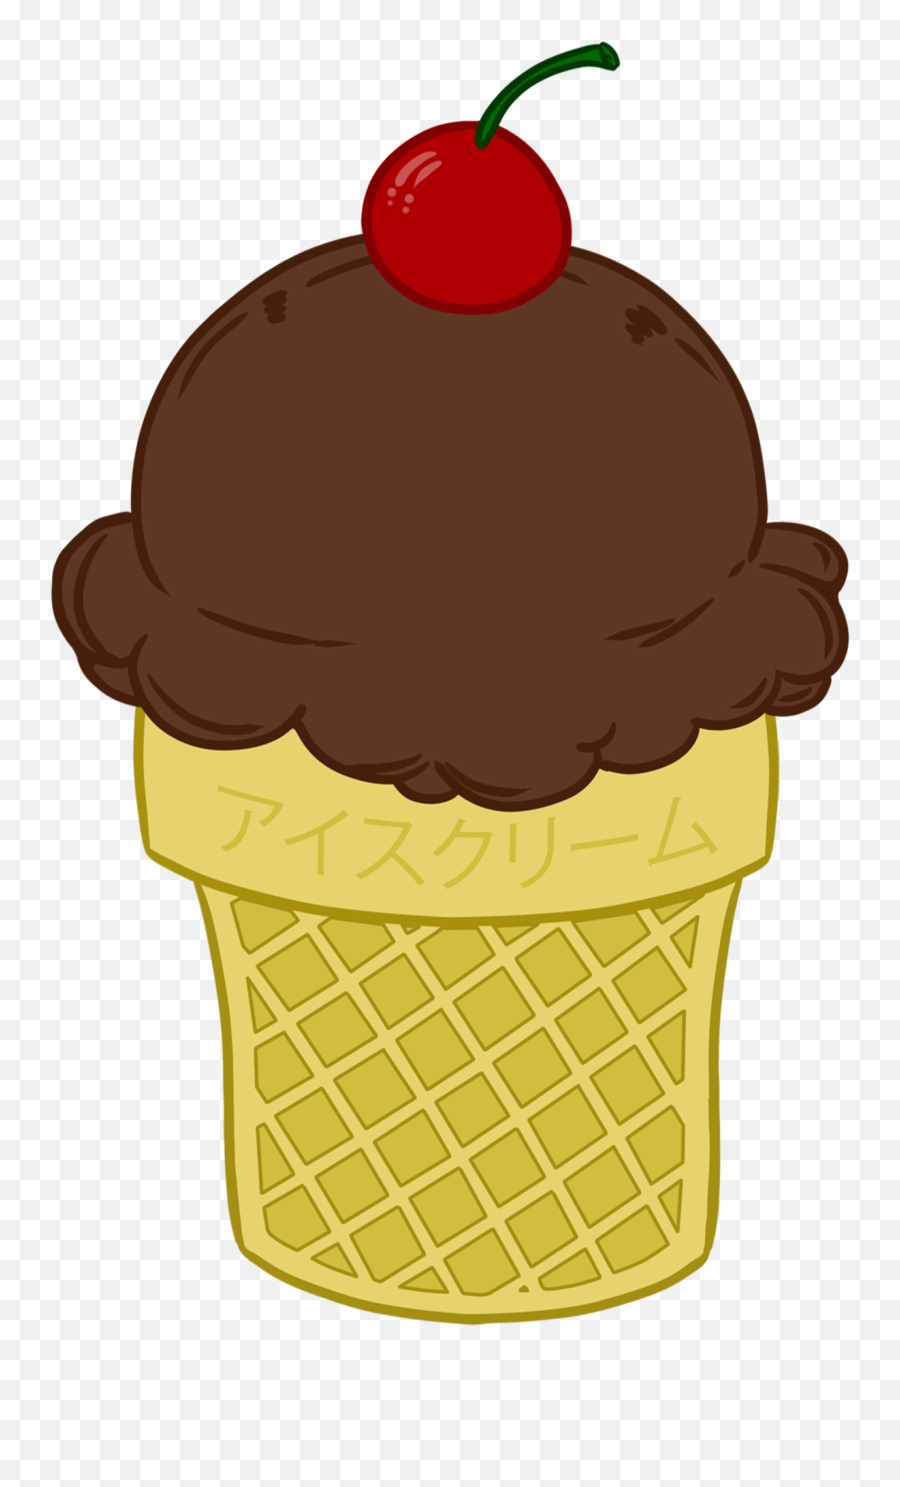 Icecream Icecream Cone Ice Cream Ice Cream Cone Vanilla - Ice Cream Cone Emoji,Ice Cream Clipart Png